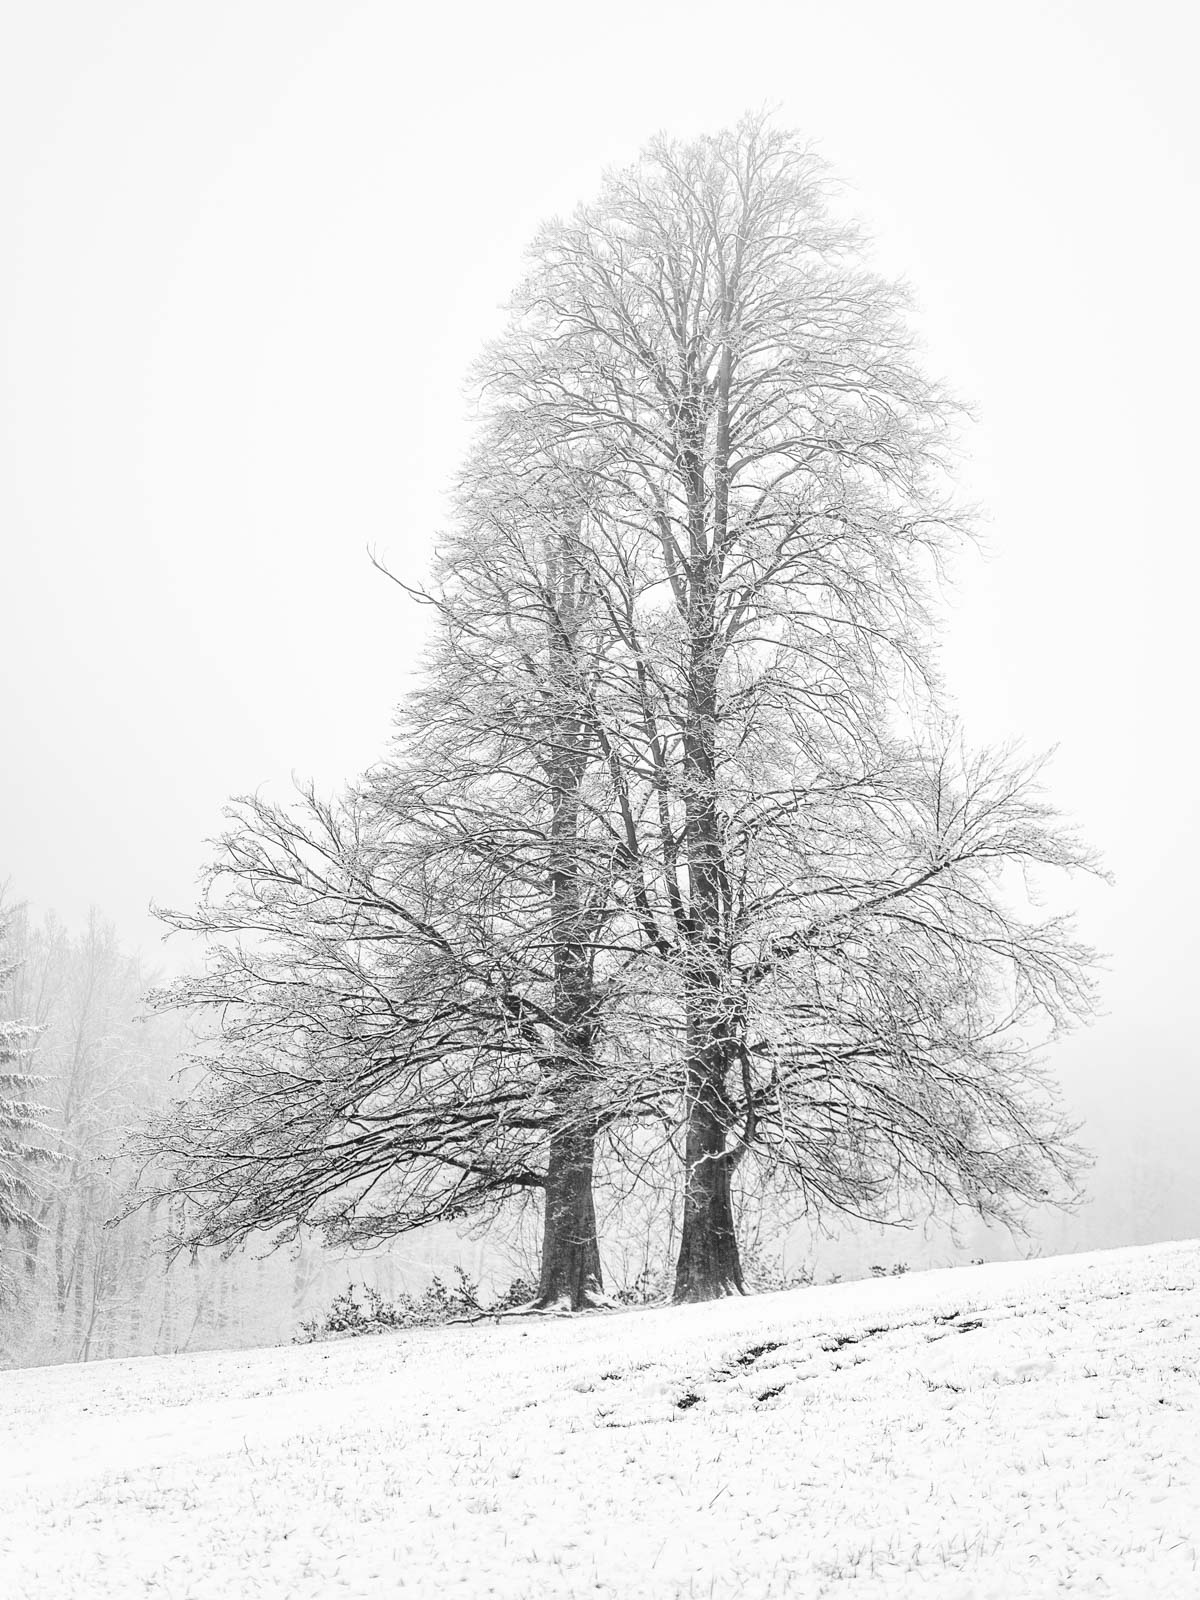 Tree in the snow at 'Ochsenheide' in January 2021 (Bielefeld, Germany).